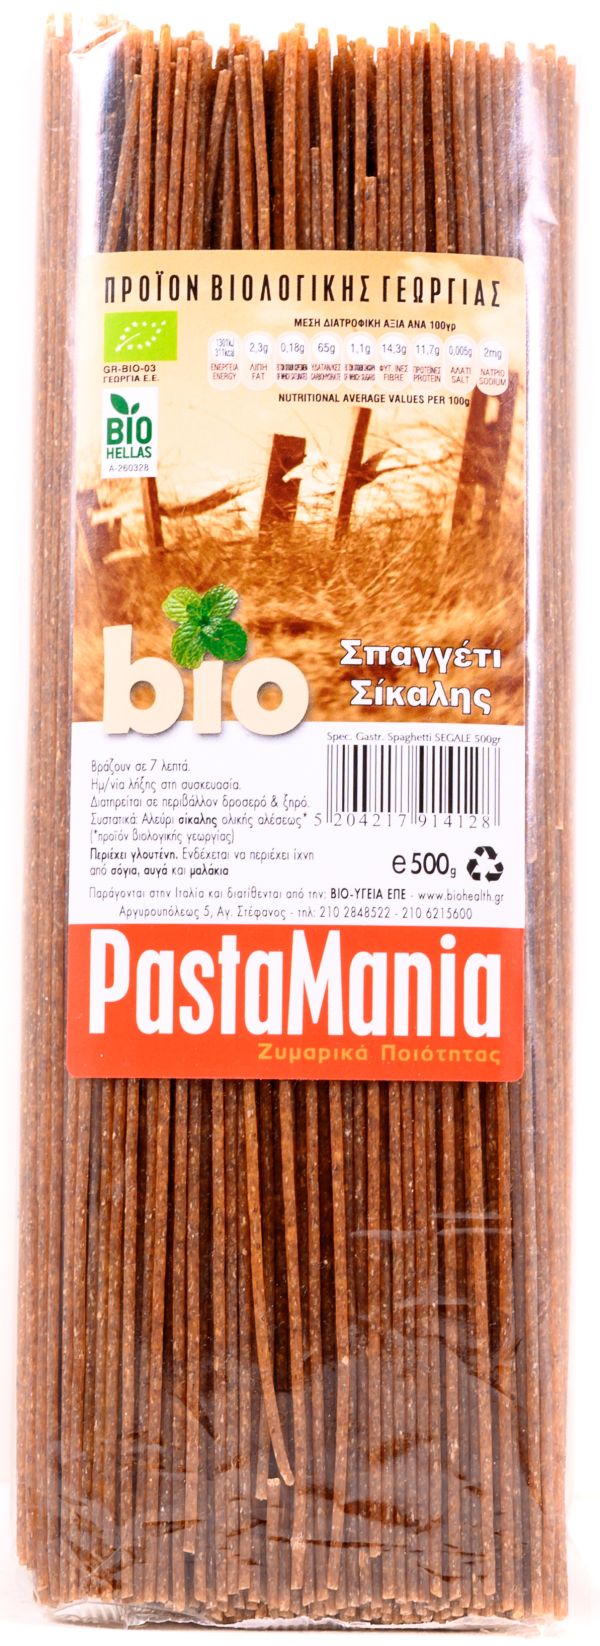 Σπαγγέτι σίκαλης 100% Pastamania